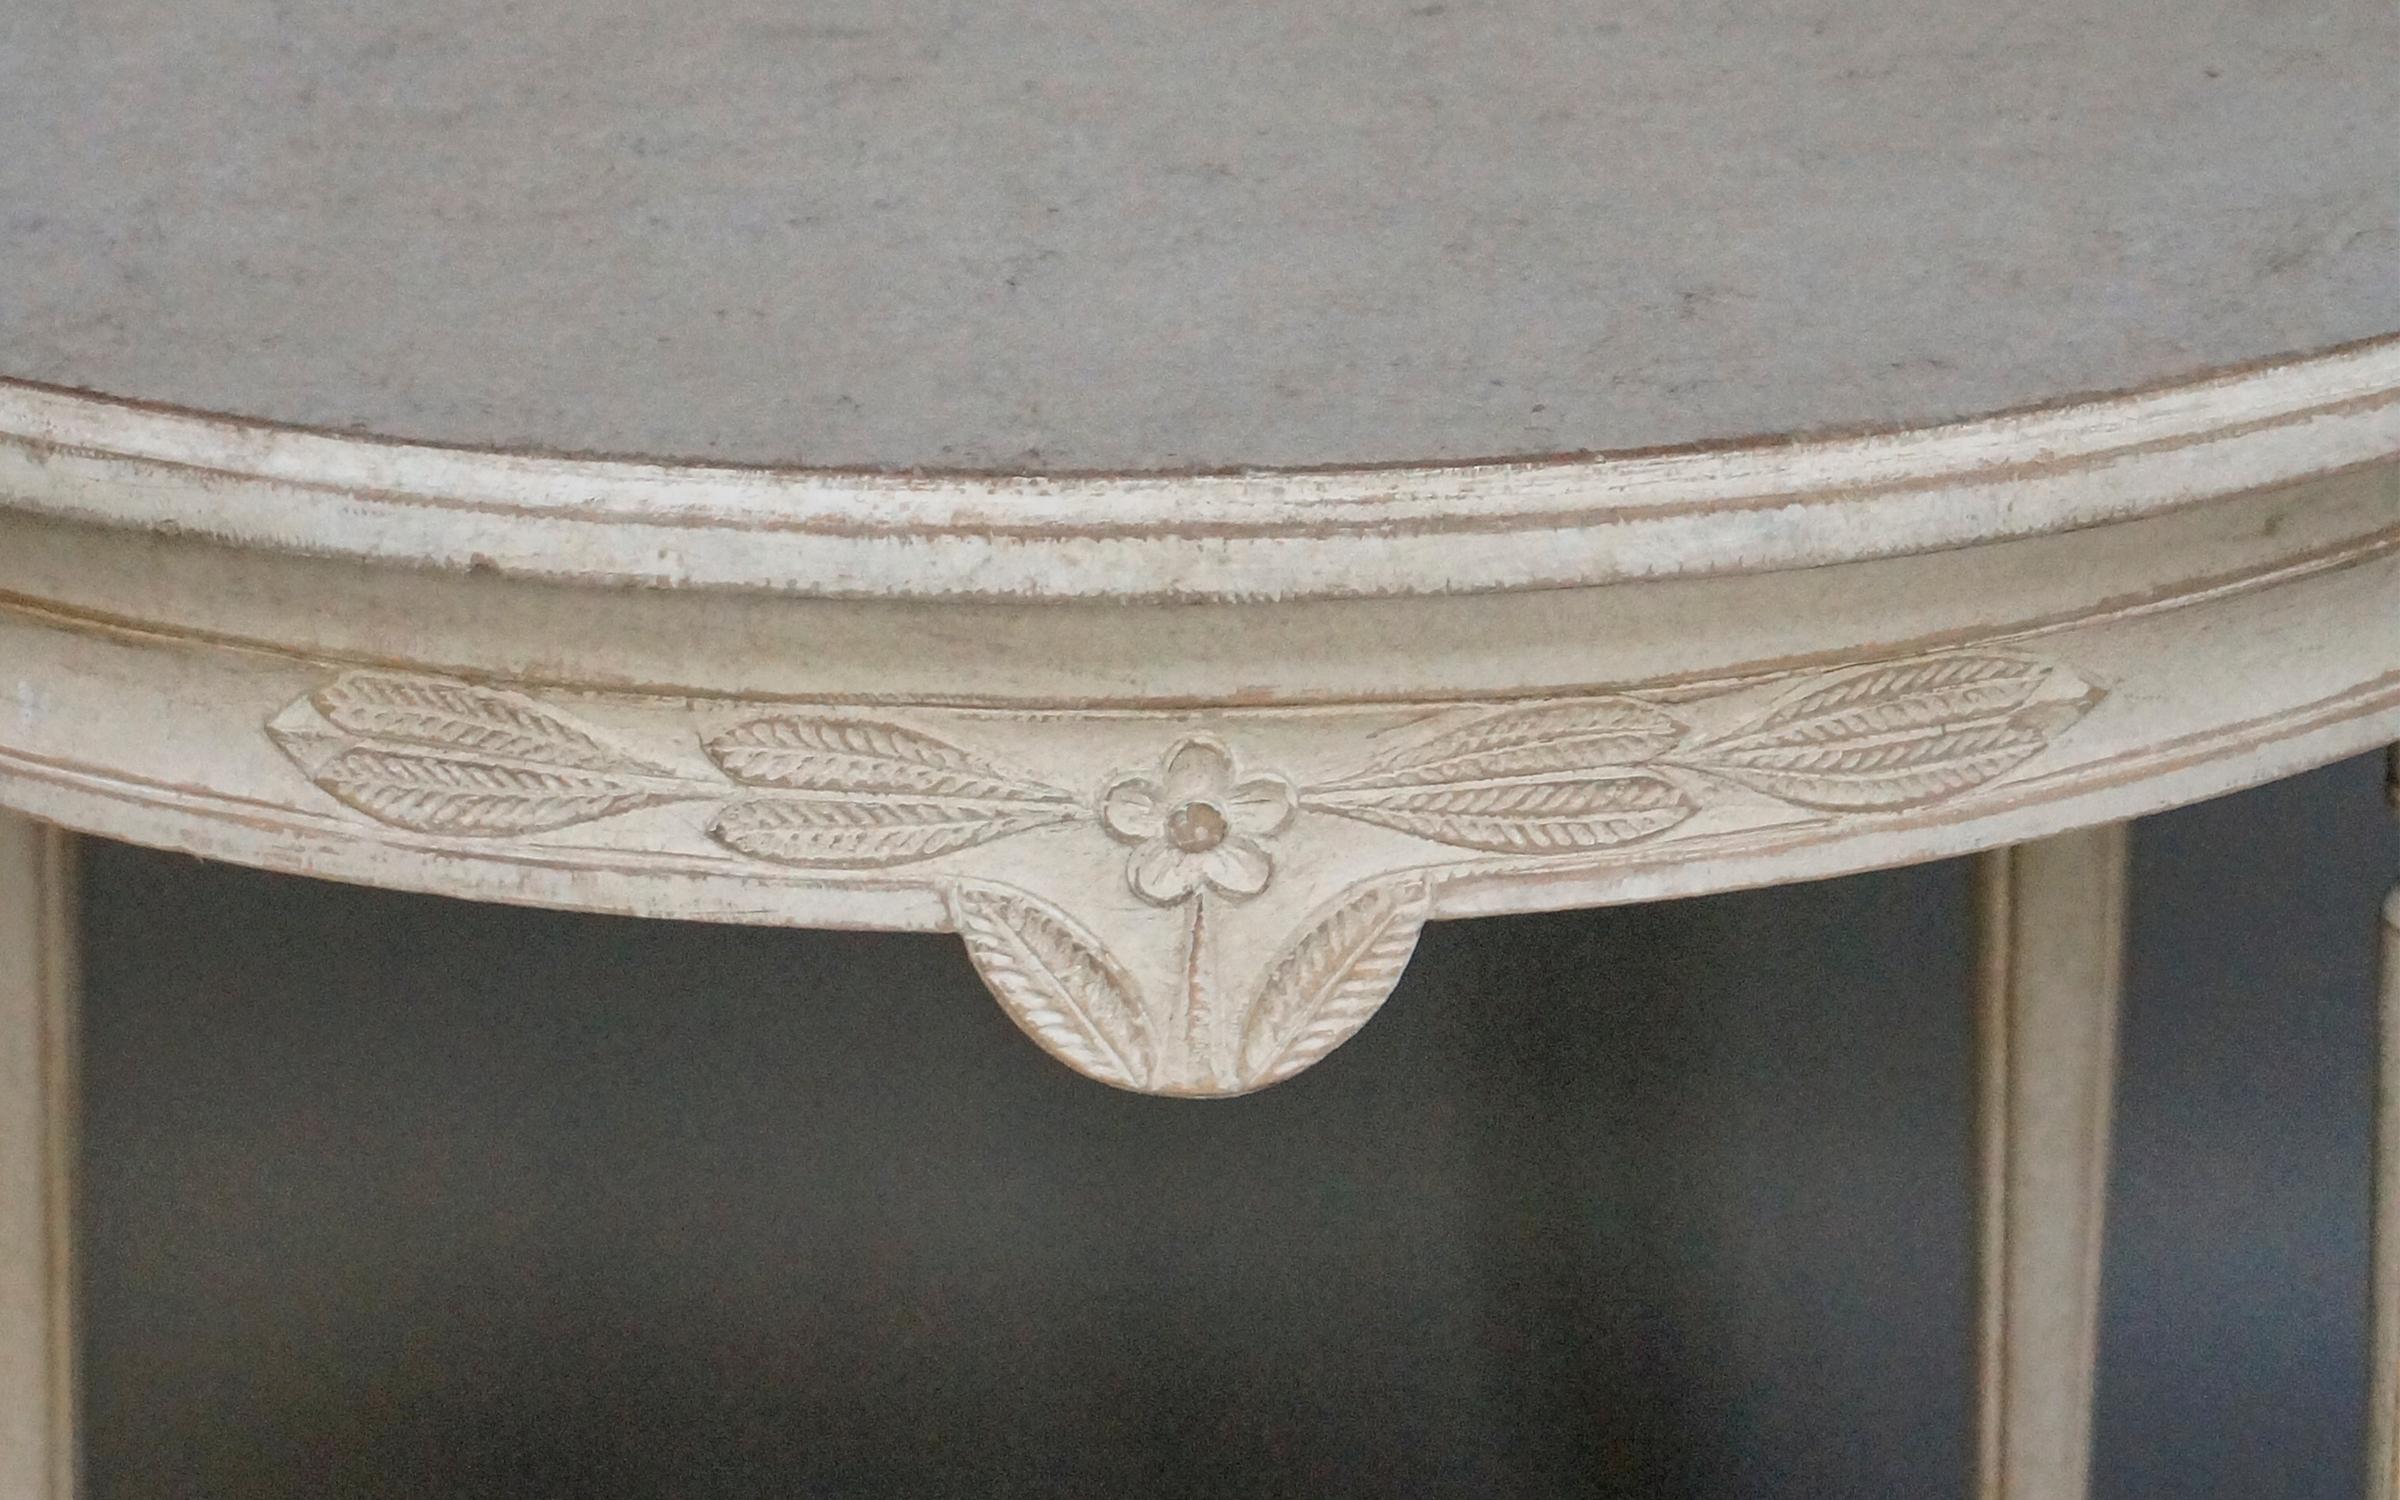 Tisch im gustavianischen Stil mit bogenförmigen Streckern (Gustavianisch)